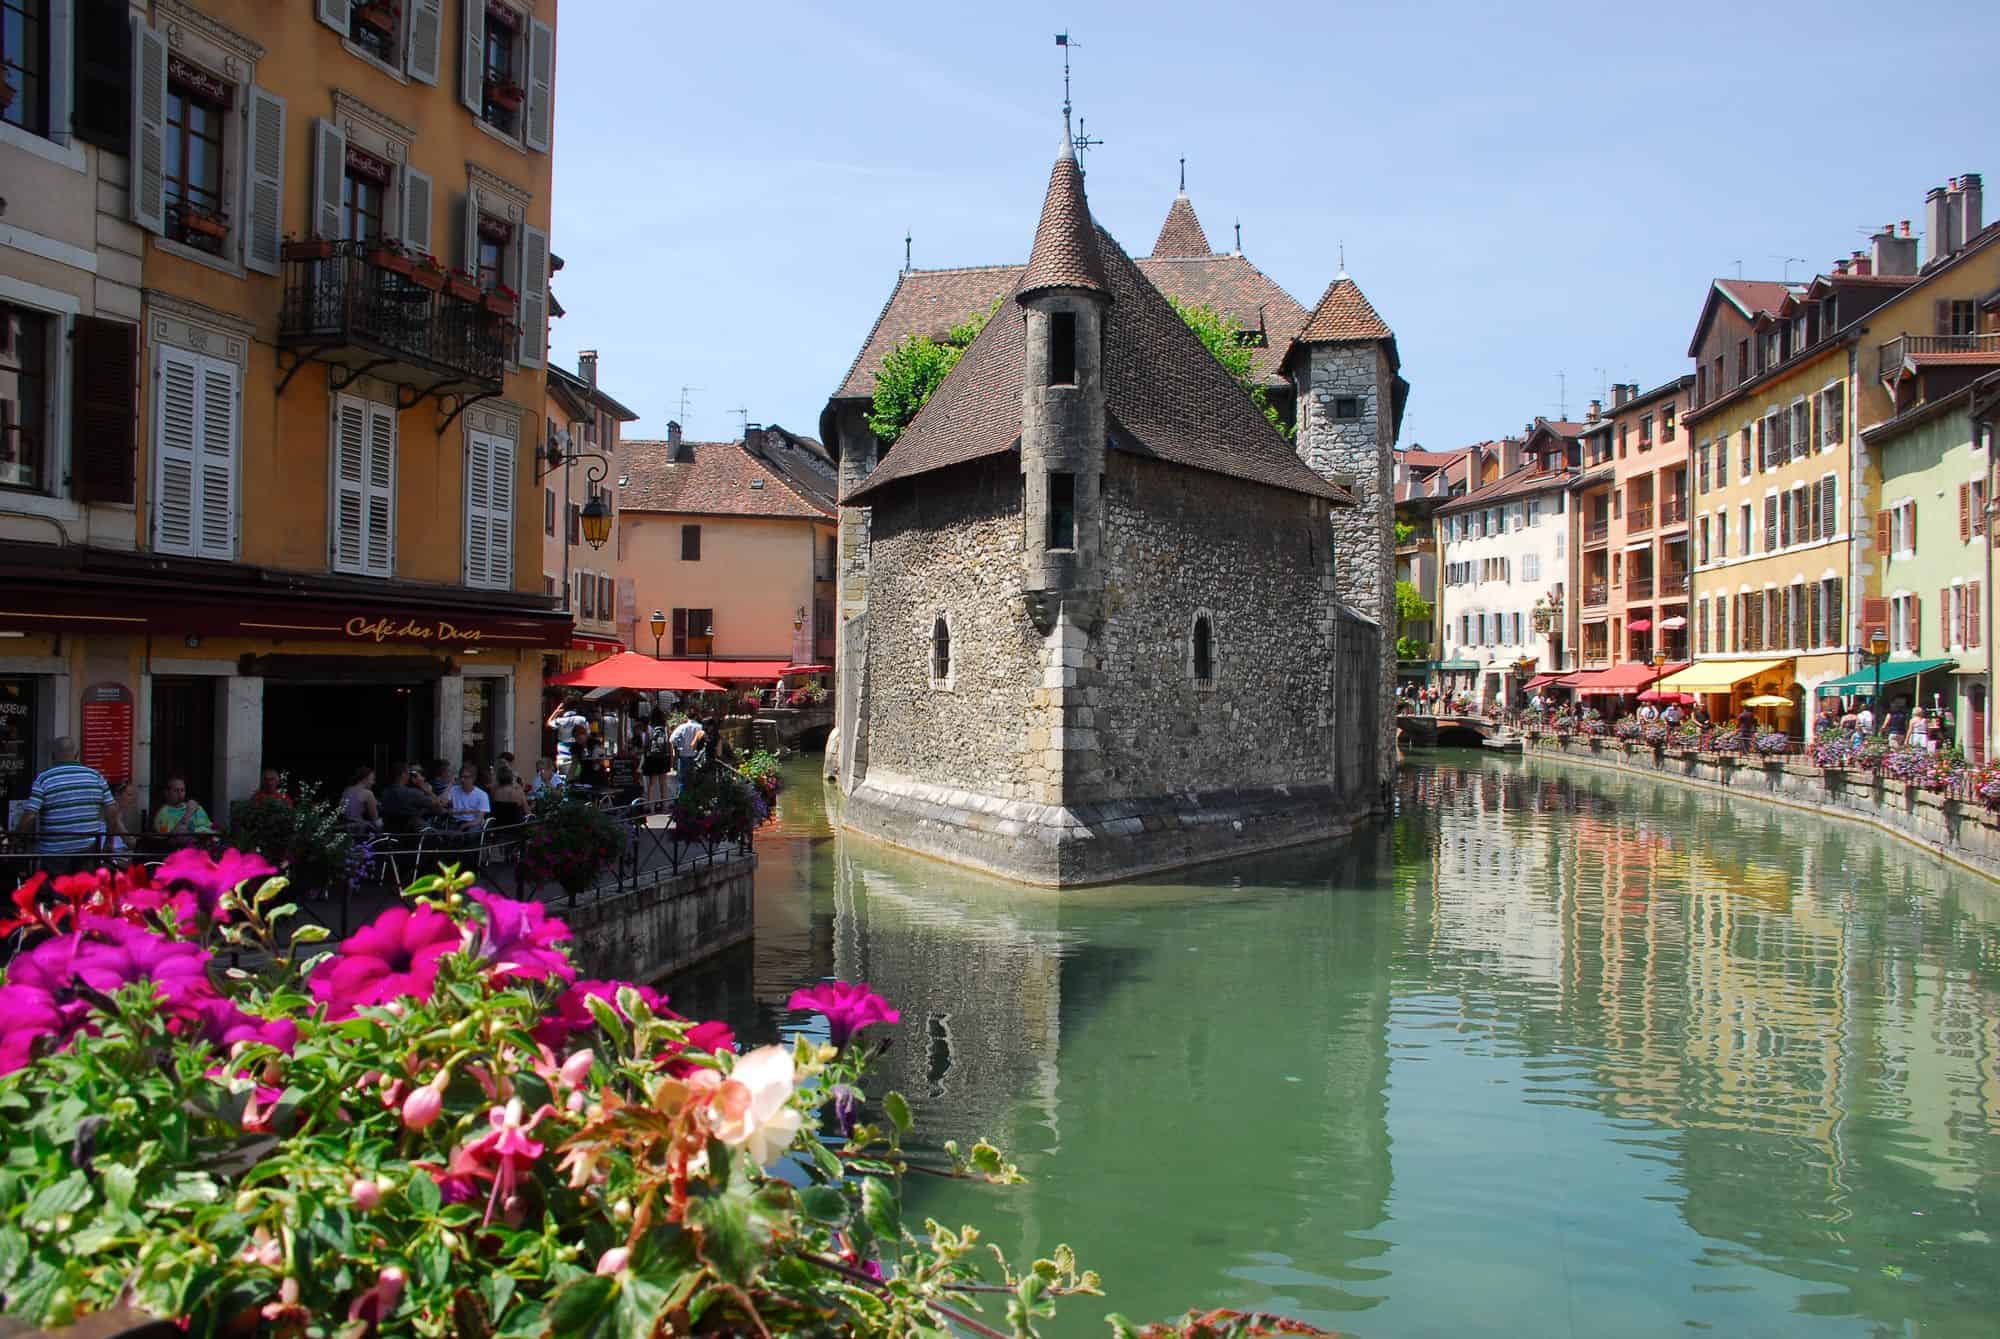 افضل 4 اماكن سياحية في انسي فرنسا